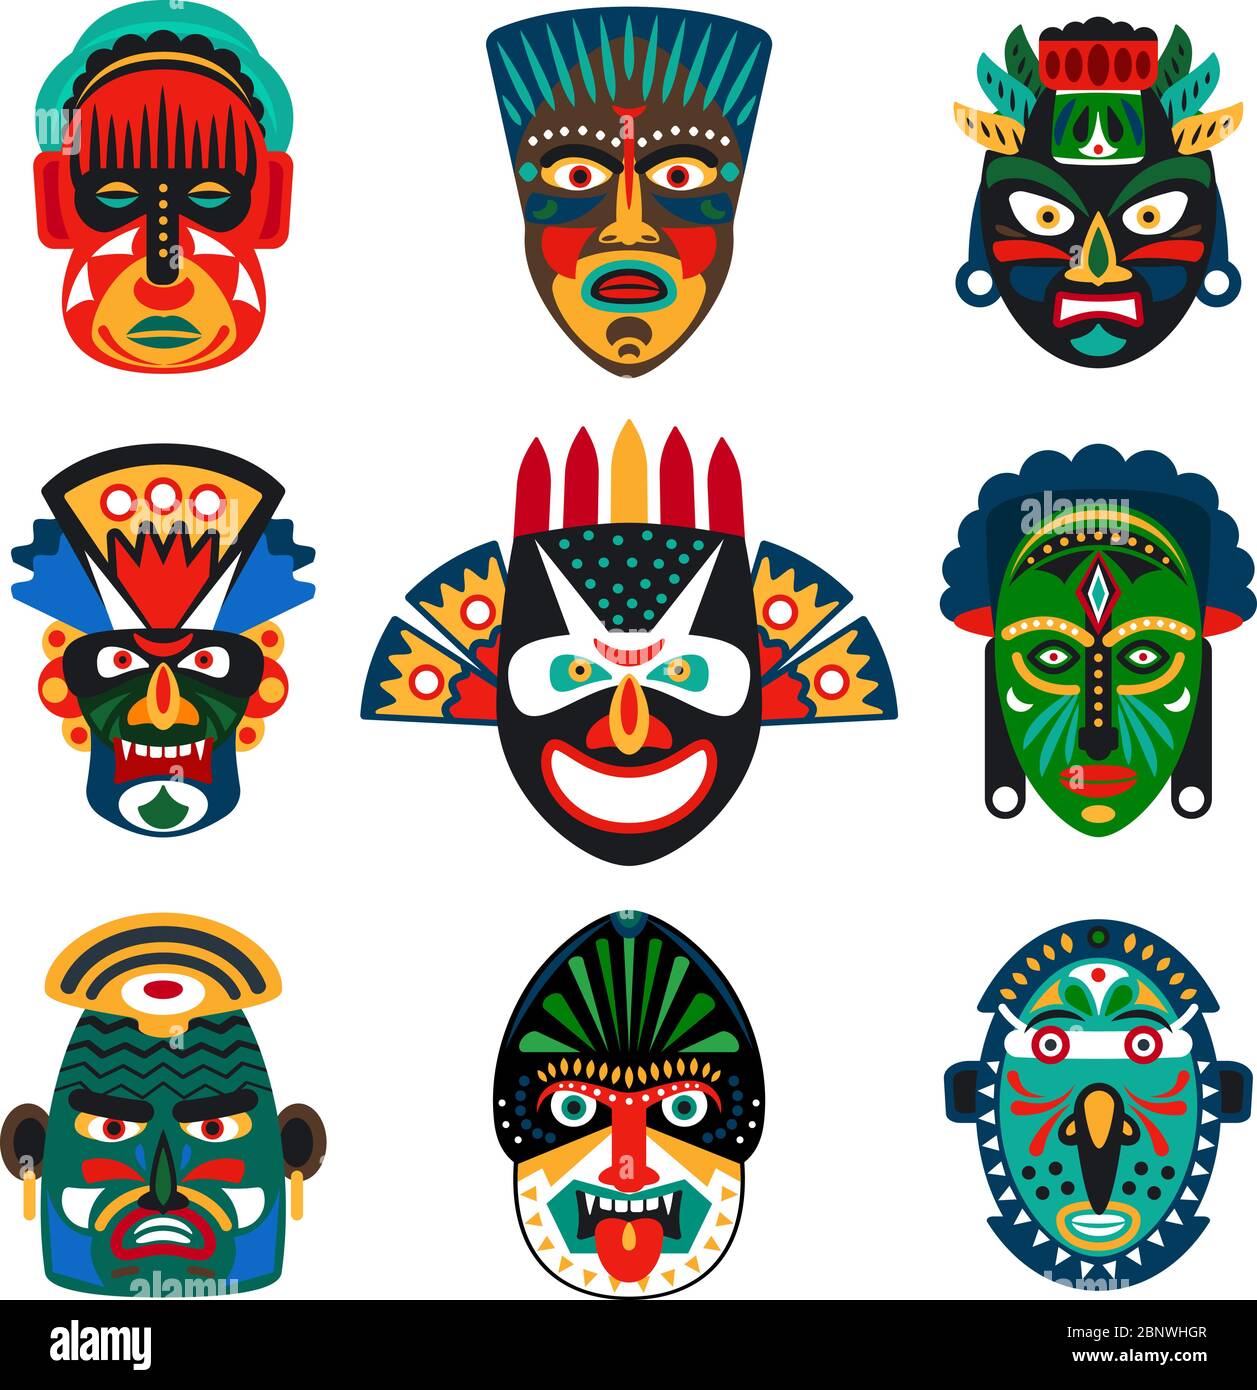 Maschere tribali indiane o africane colorate su sfondo bianco. Illustrazione vettoriale Illustrazione Vettoriale